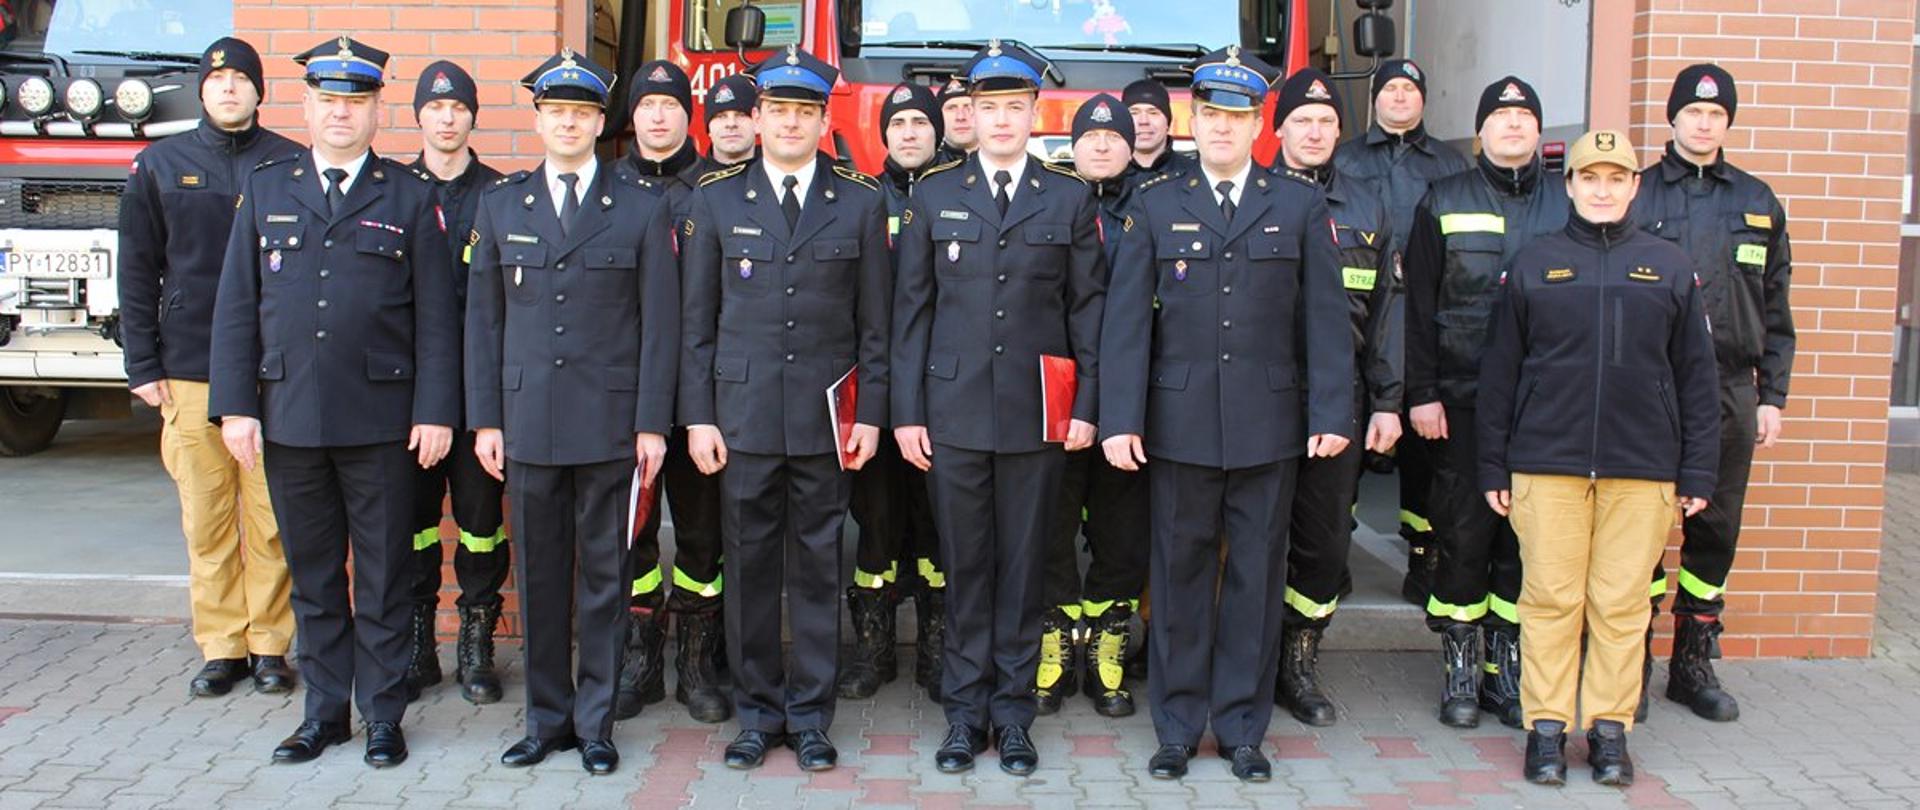 Zdjęcie przedstawia strażaków stojących na uroczystej zbiórce.